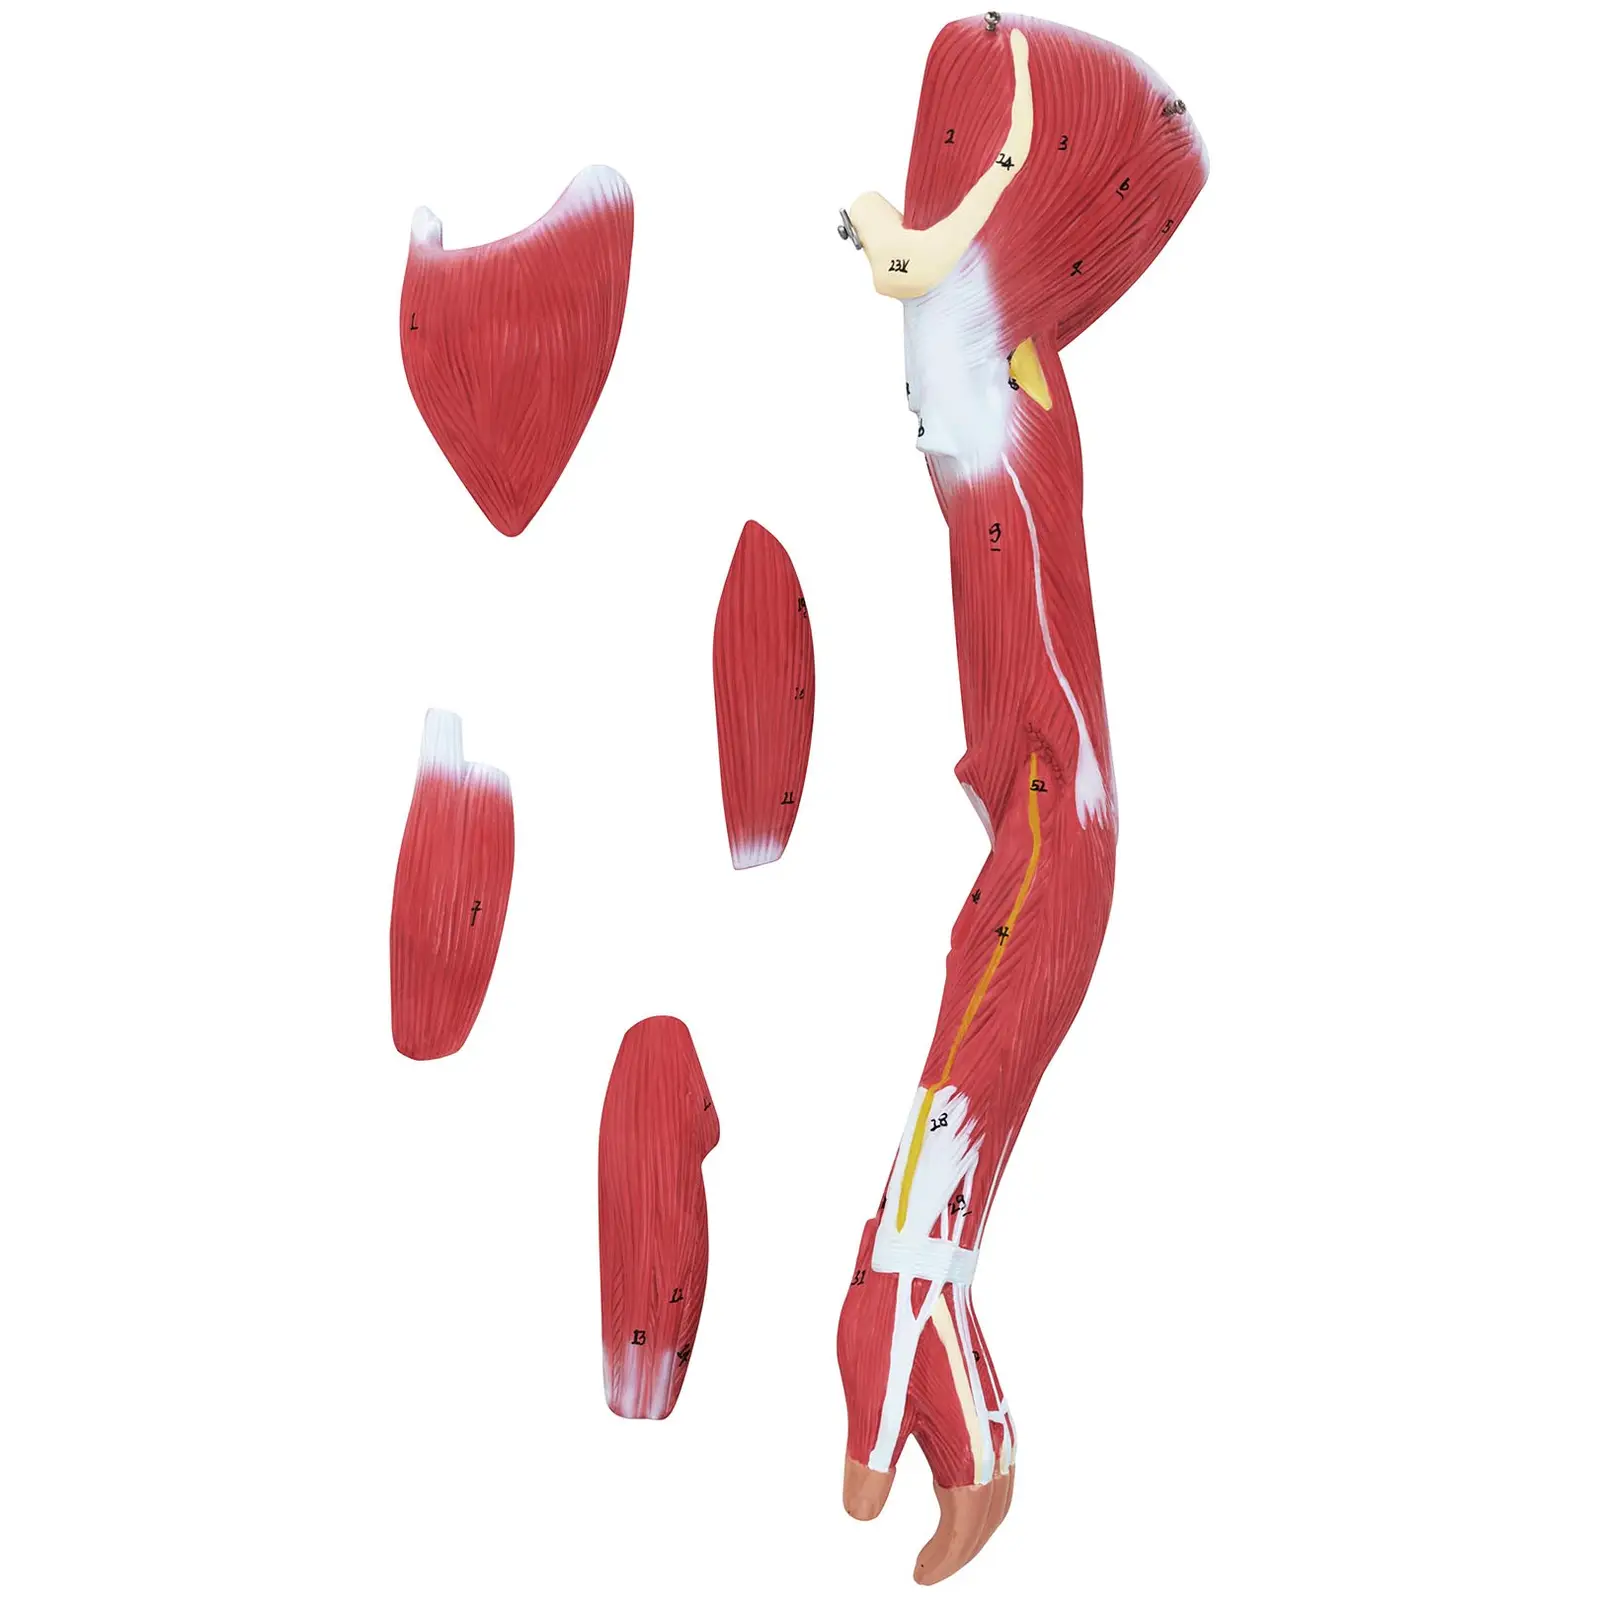 Manechin Mușchii Corpului Uman - unisex - 27 piese - 76 cm înălțime